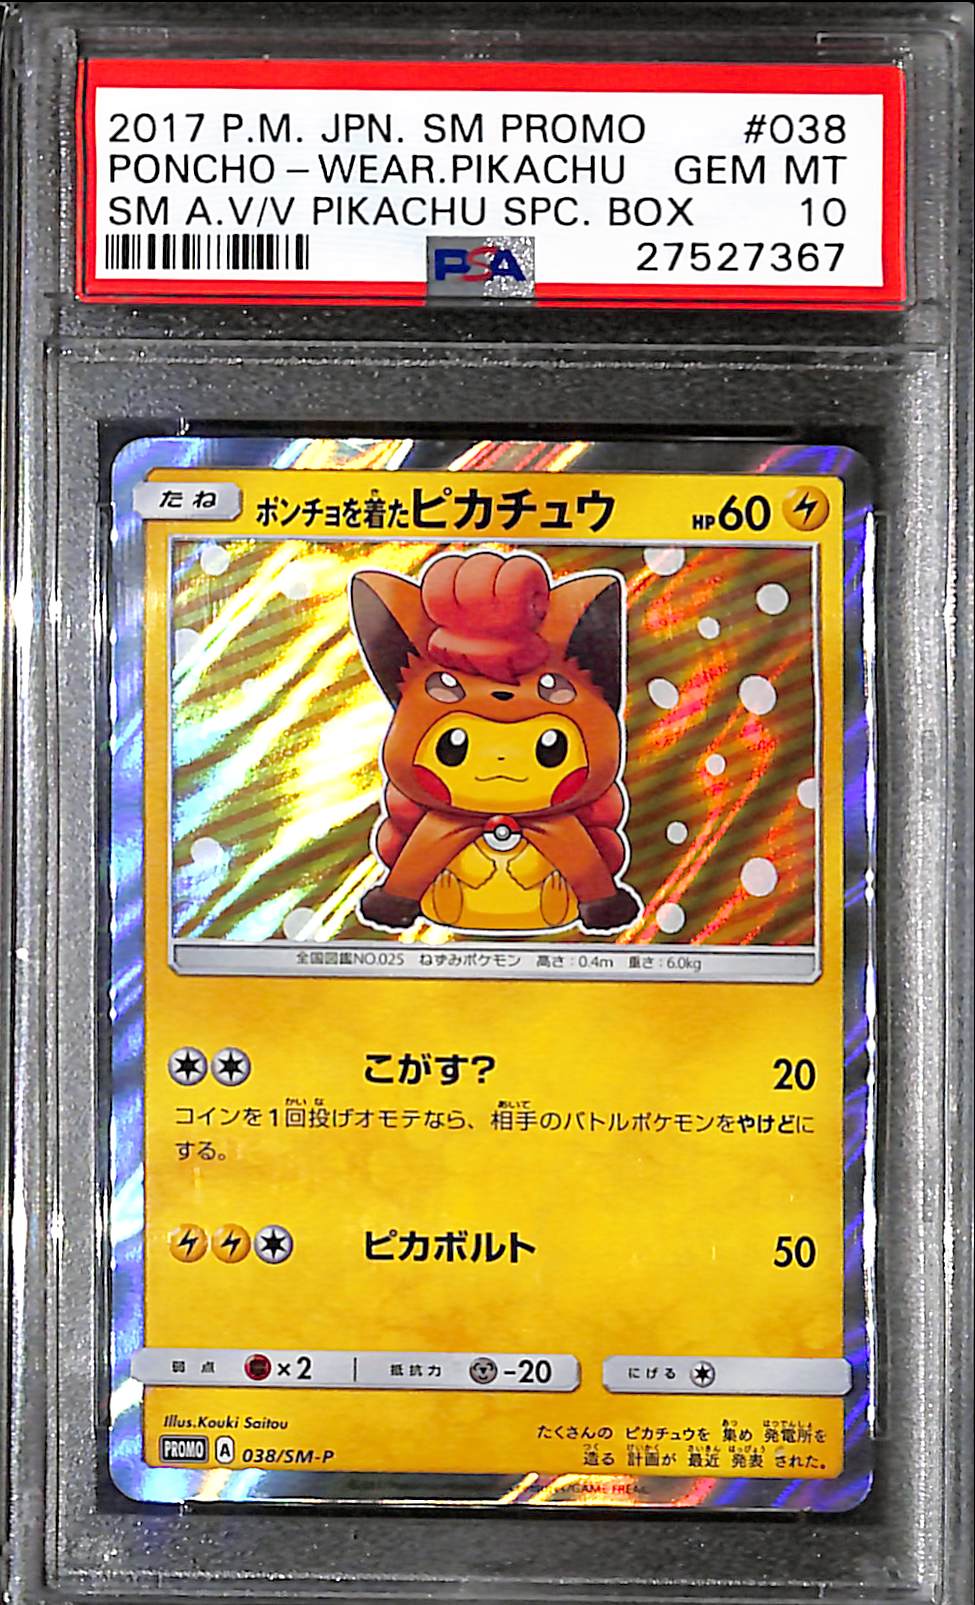 PSA10 - 2017 Pokemon Japanese - Poncho-Wear Pikachu 038/SM-P - SM A V/V Pikachu Spc Box - TCGroupAU